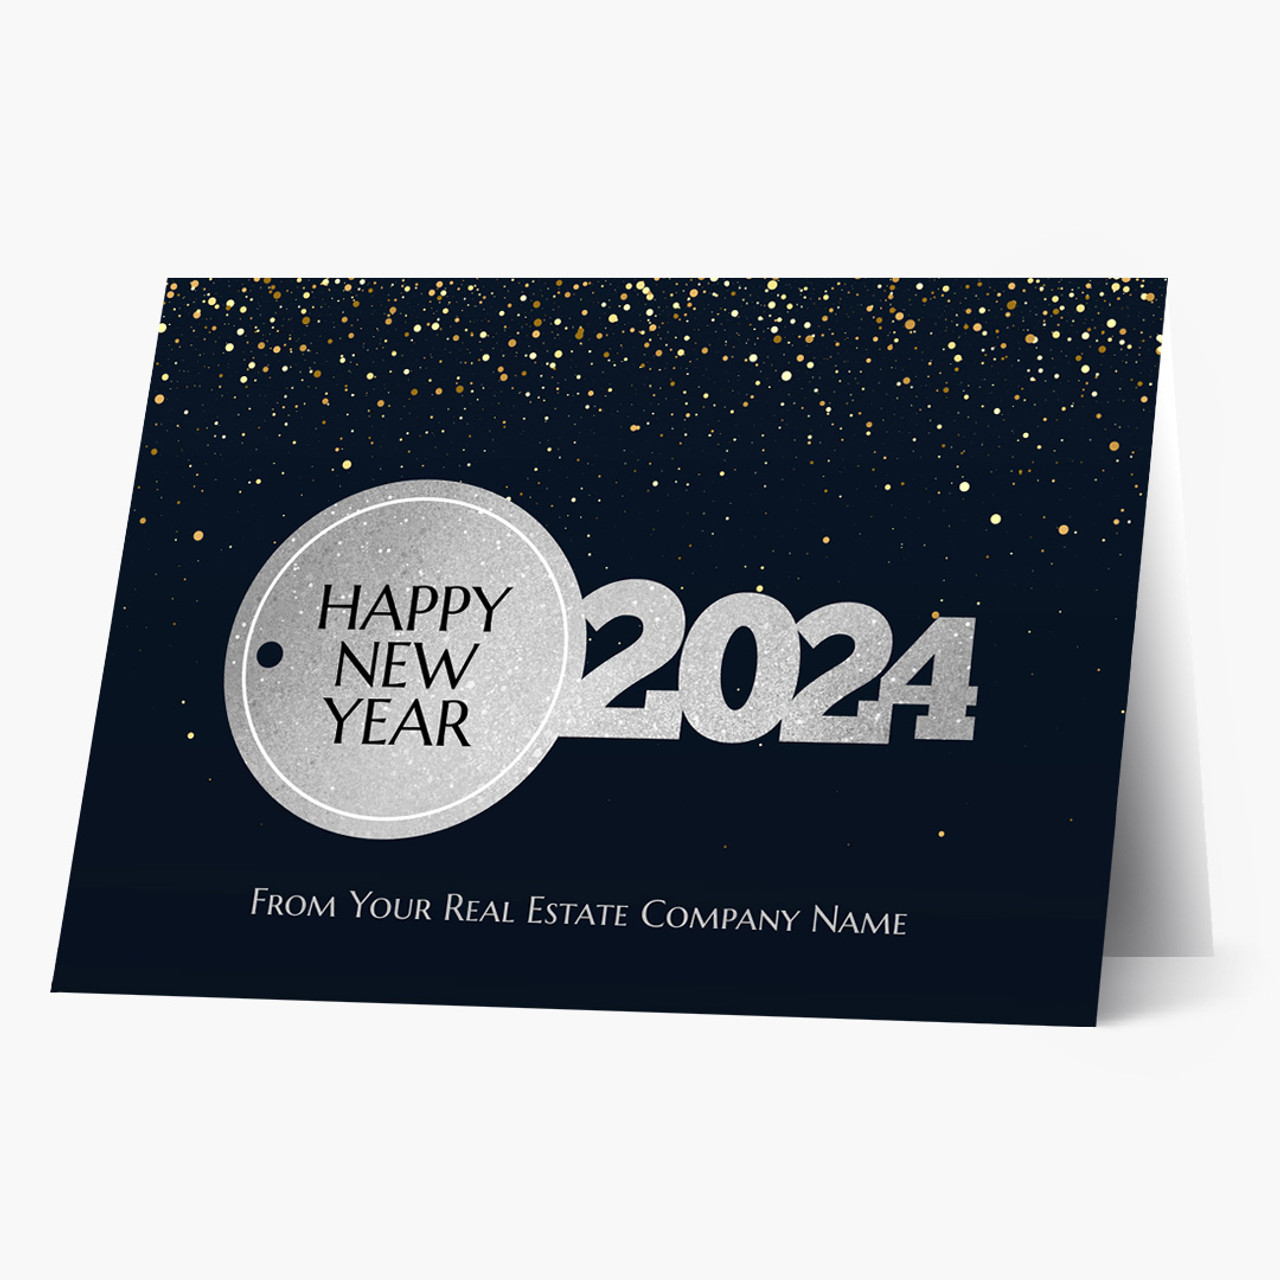 2024 Key New Year Card